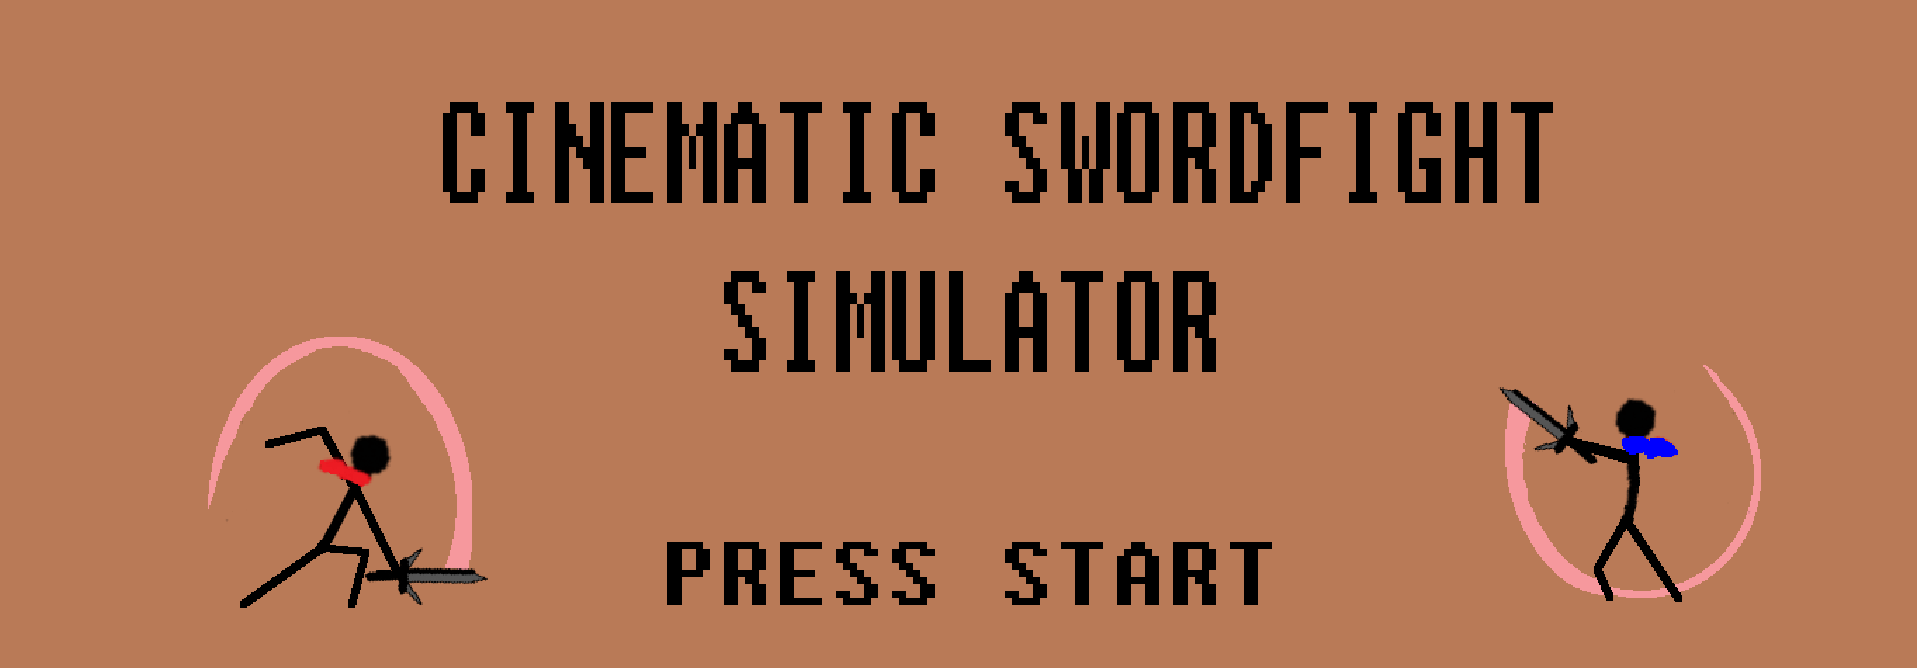 Cinematic Swordfight Simulator